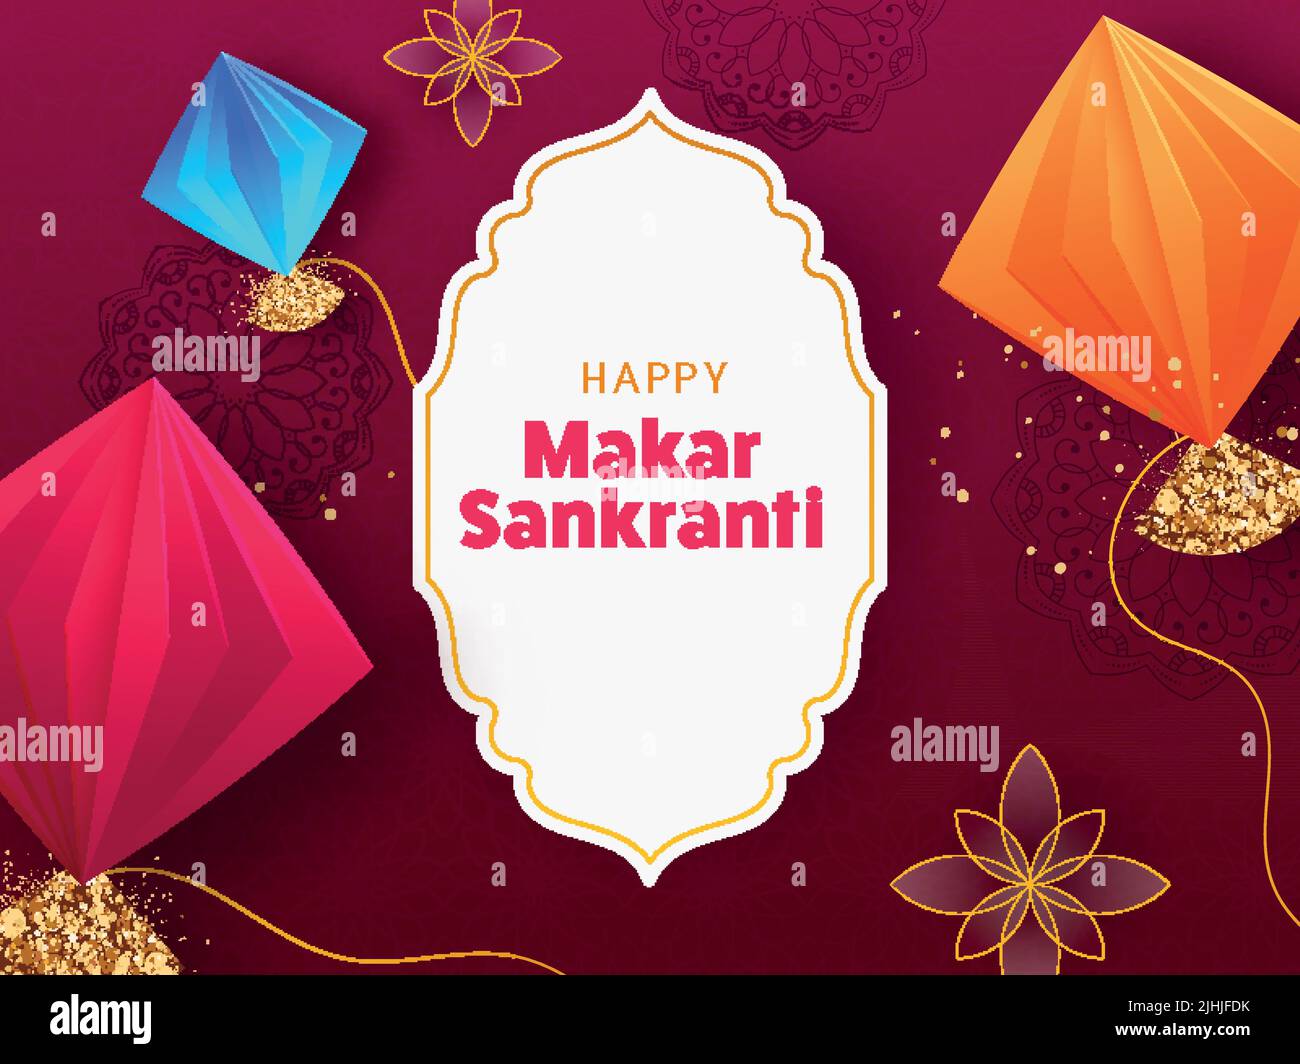 Happy Makar Sankranti Font su White Vintage Frame e colorati Origami Paper Kites su sfondo floreale rosso. Illustrazione Vettoriale